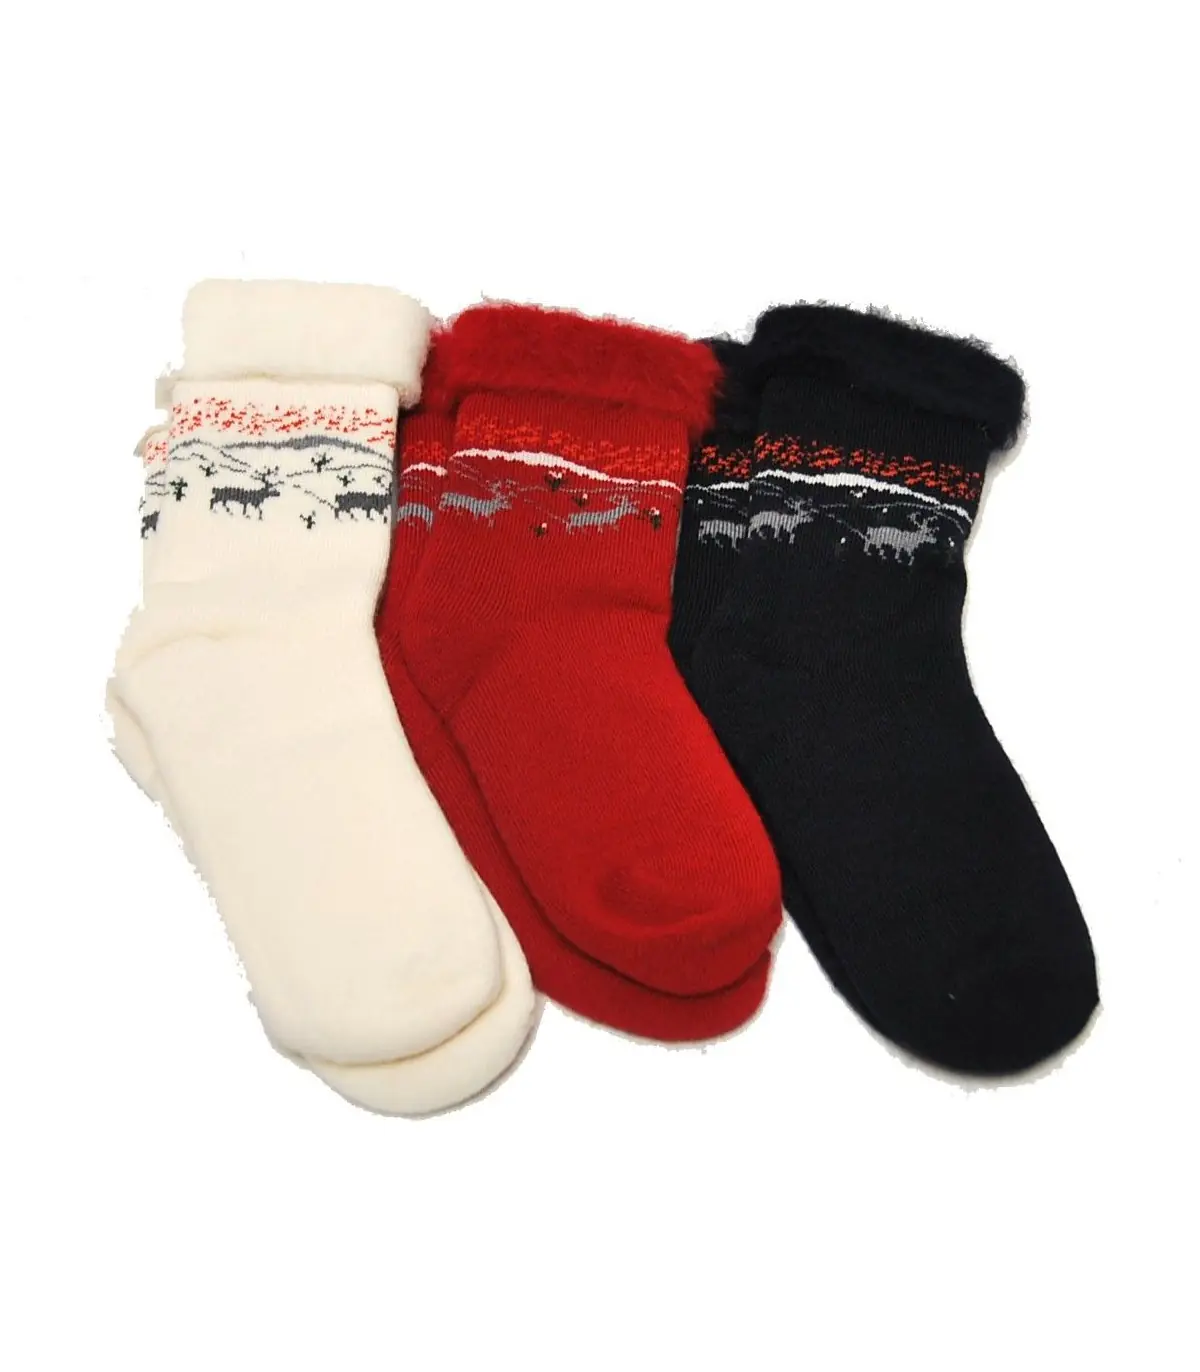 Jusqu'à 75% 1, 2 ou 3 paires de chaussettes en laine polaire thermique